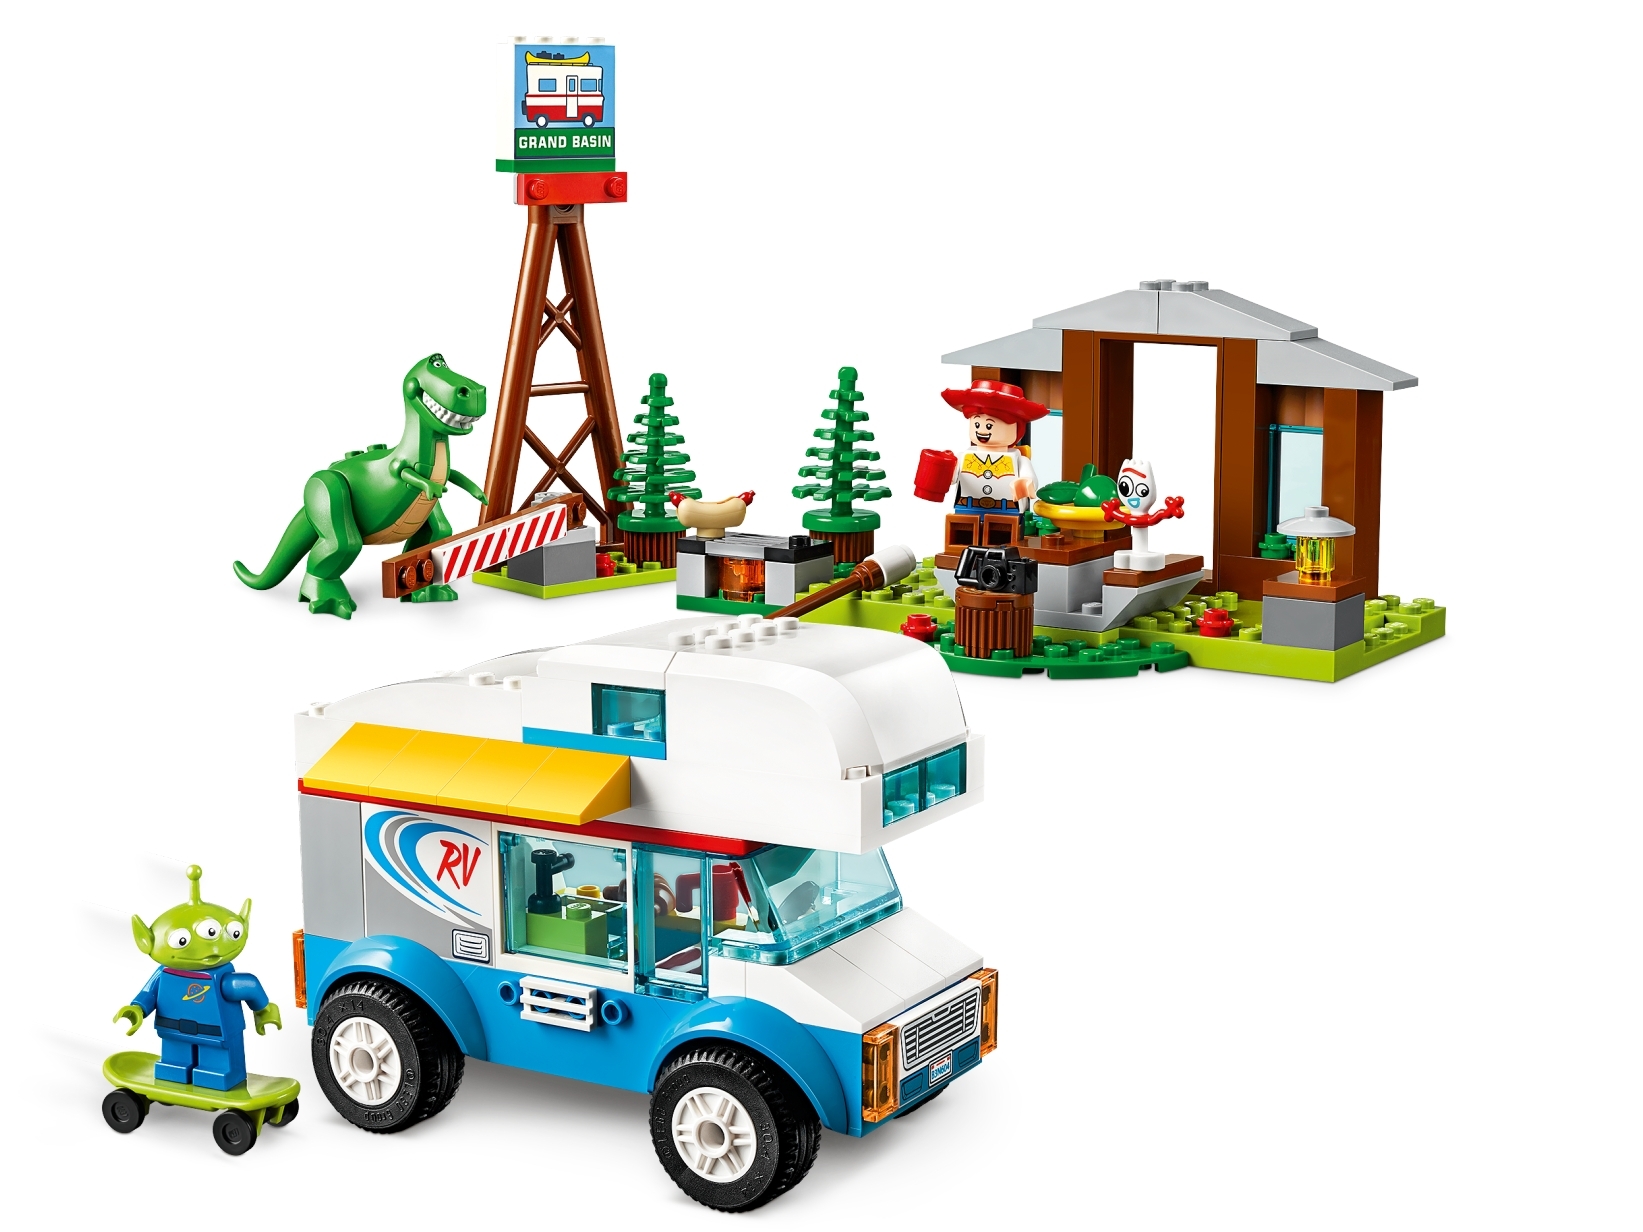 toy story camper van